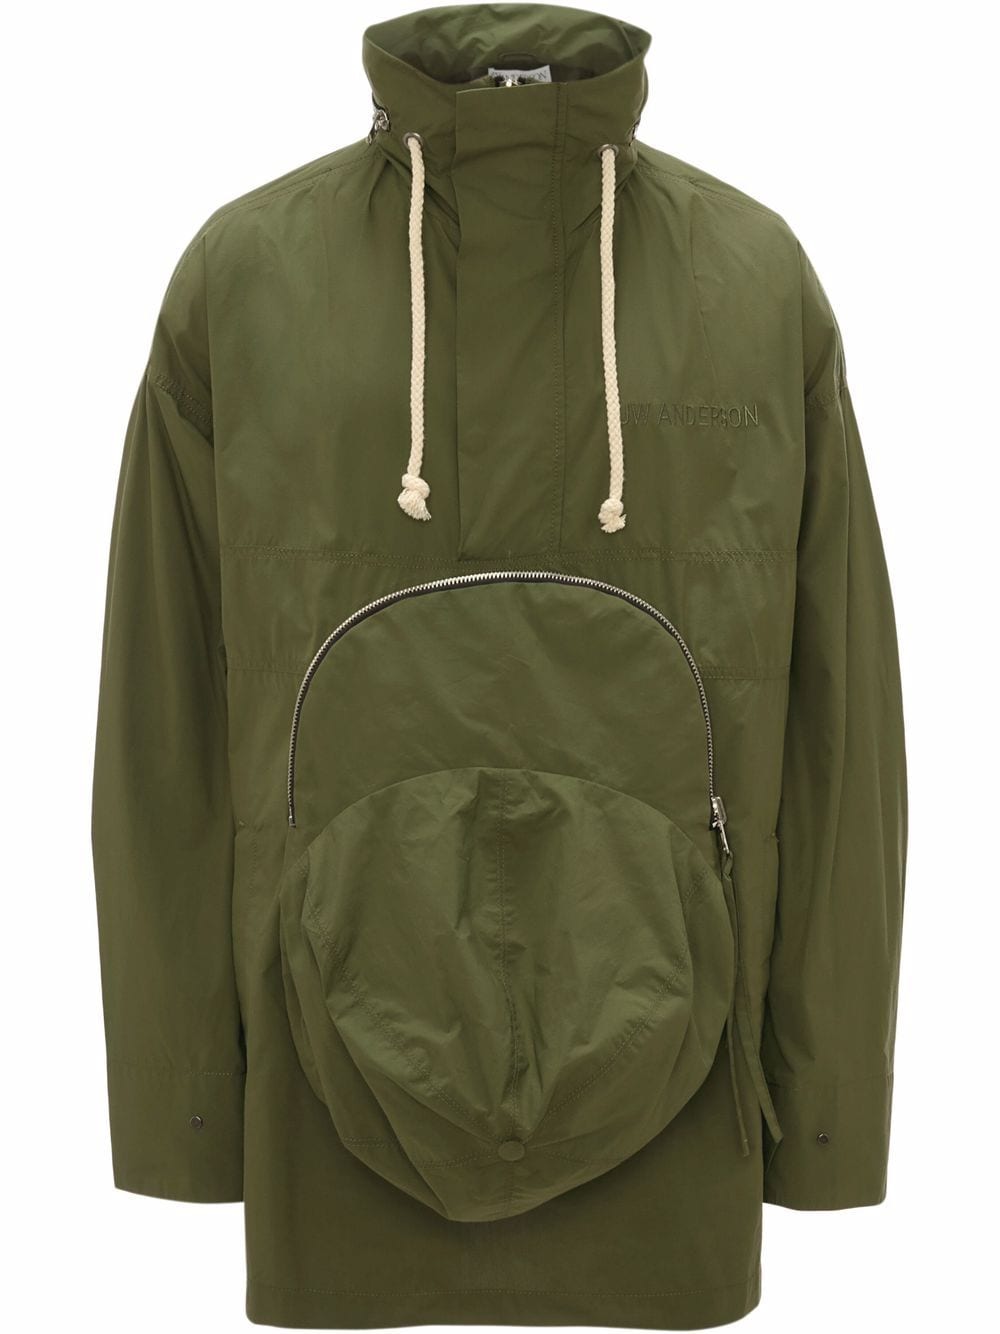 JW Anderson Jacke mit Tasche im Cap-Style - Grün von JW Anderson